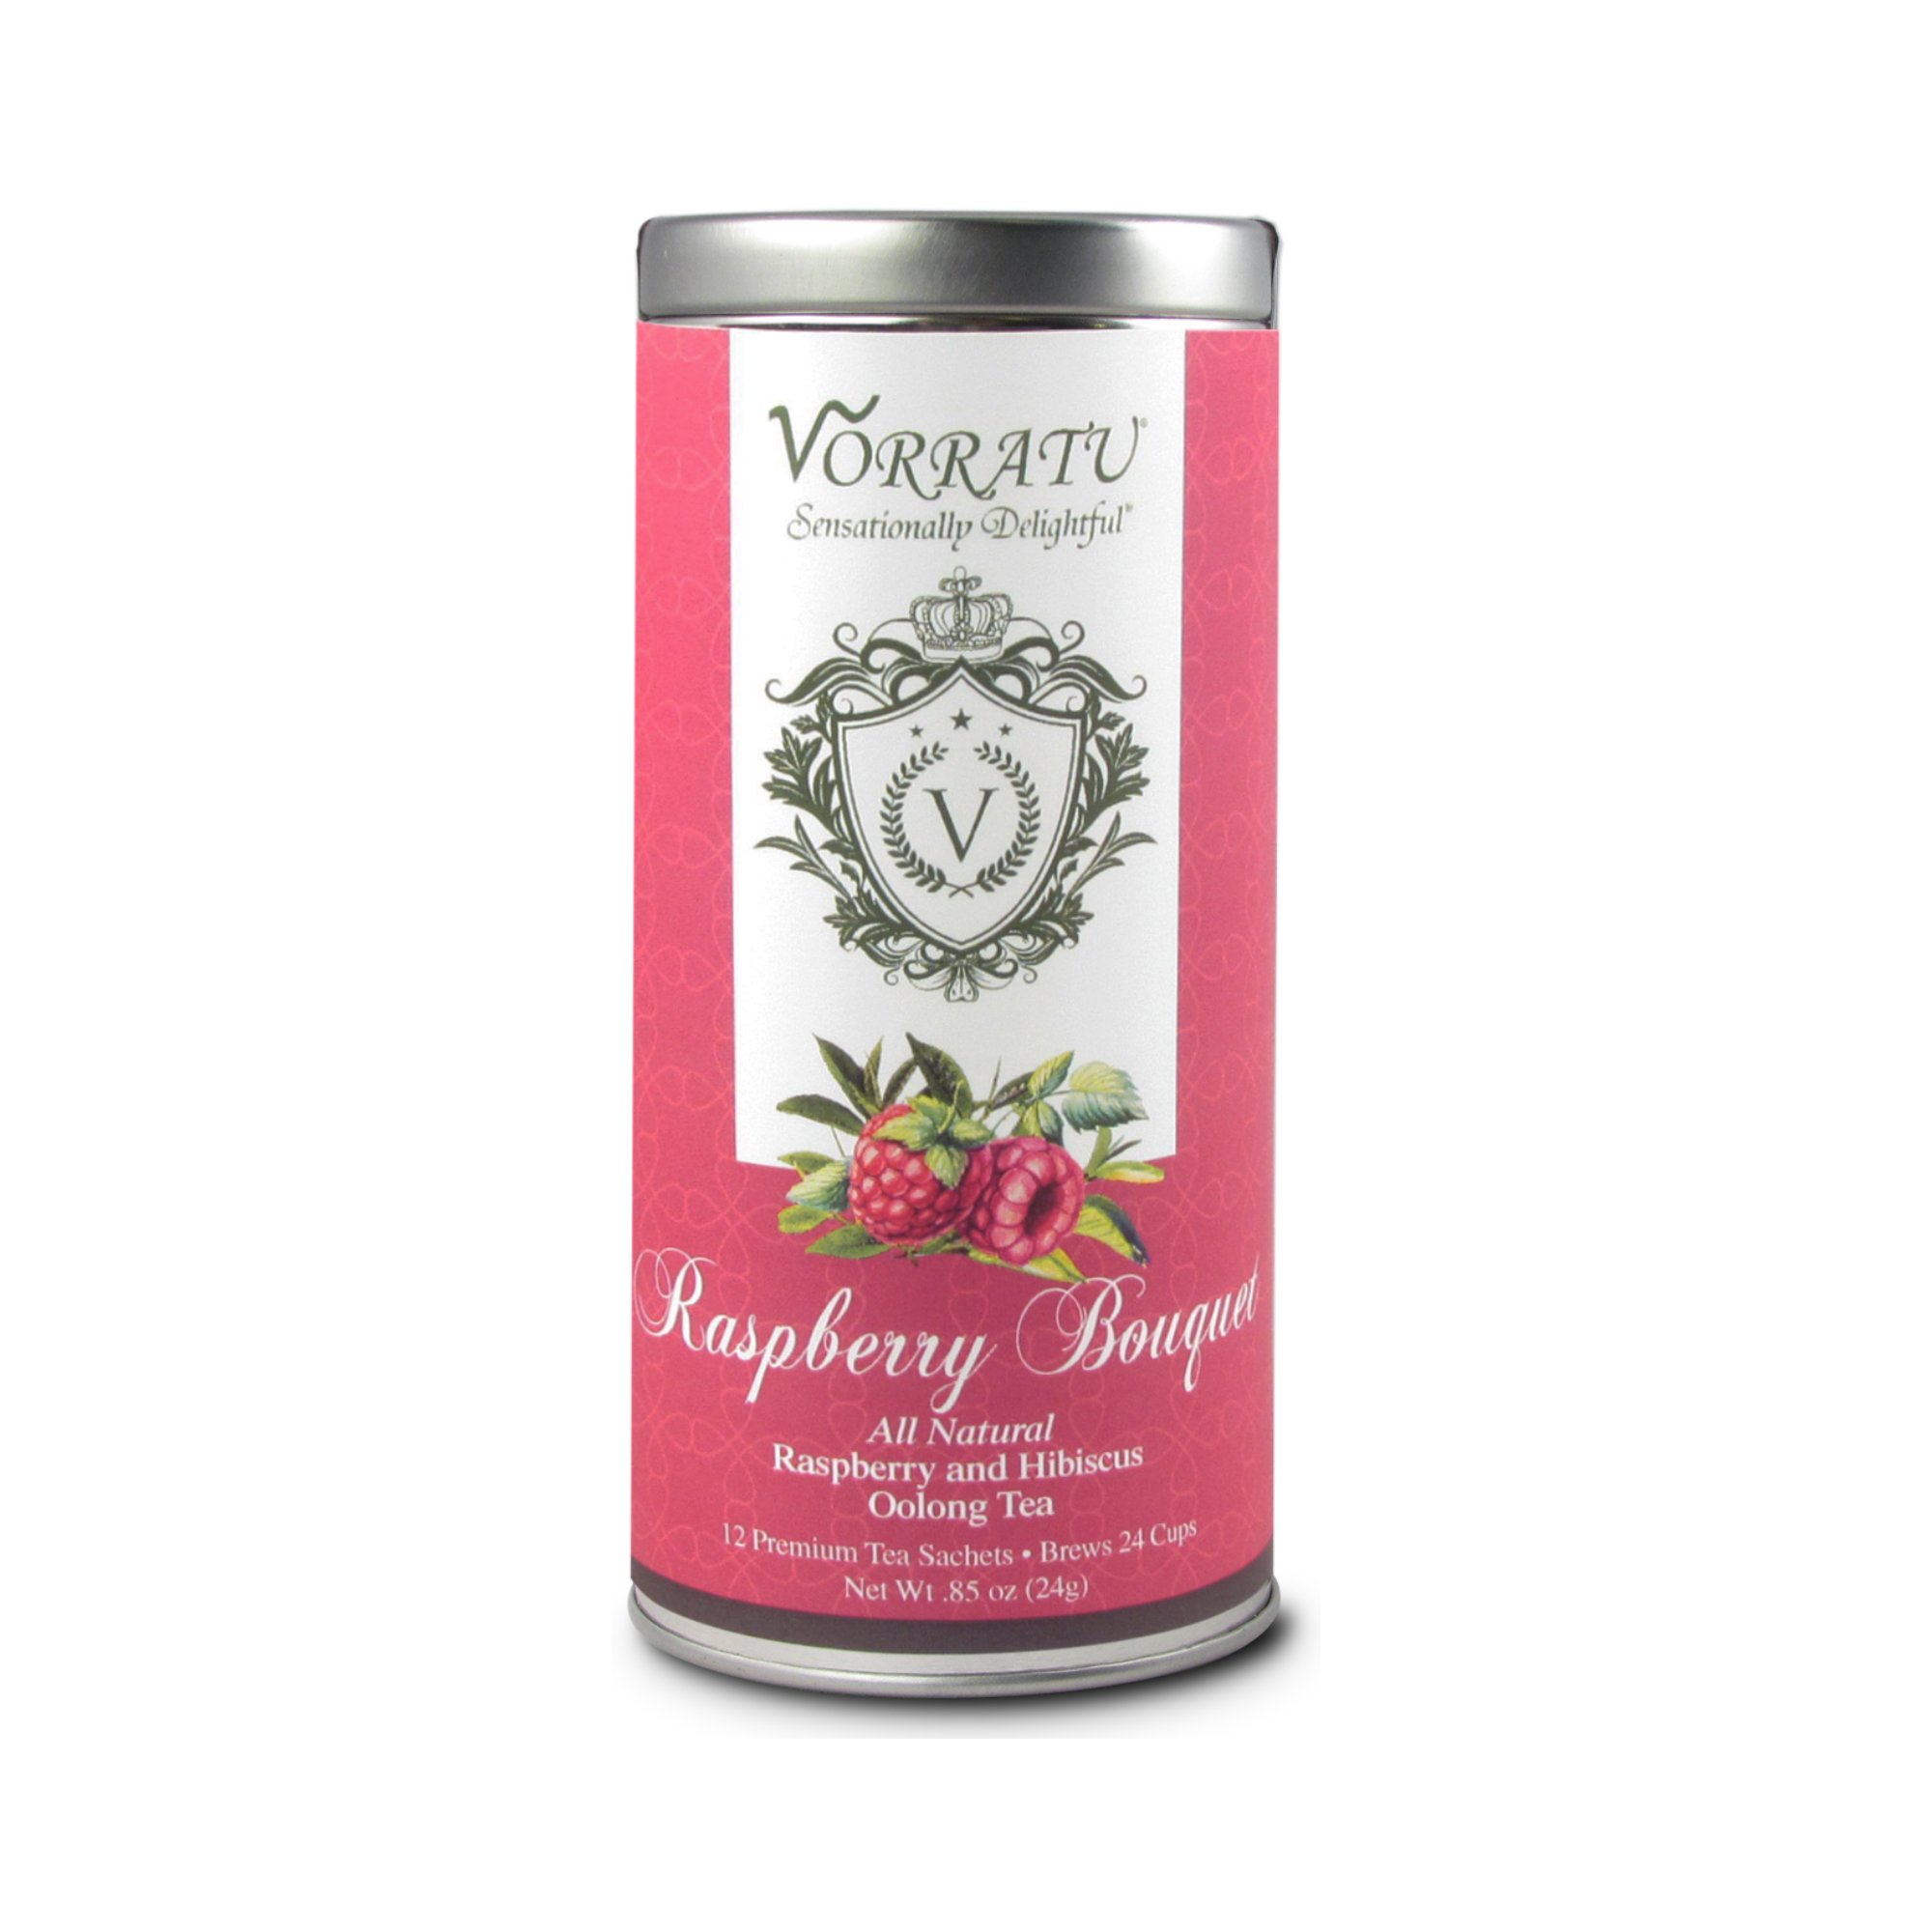 Vorratu Company Raspberry Bouquet Oolong Tea Oolong Tea Sachets